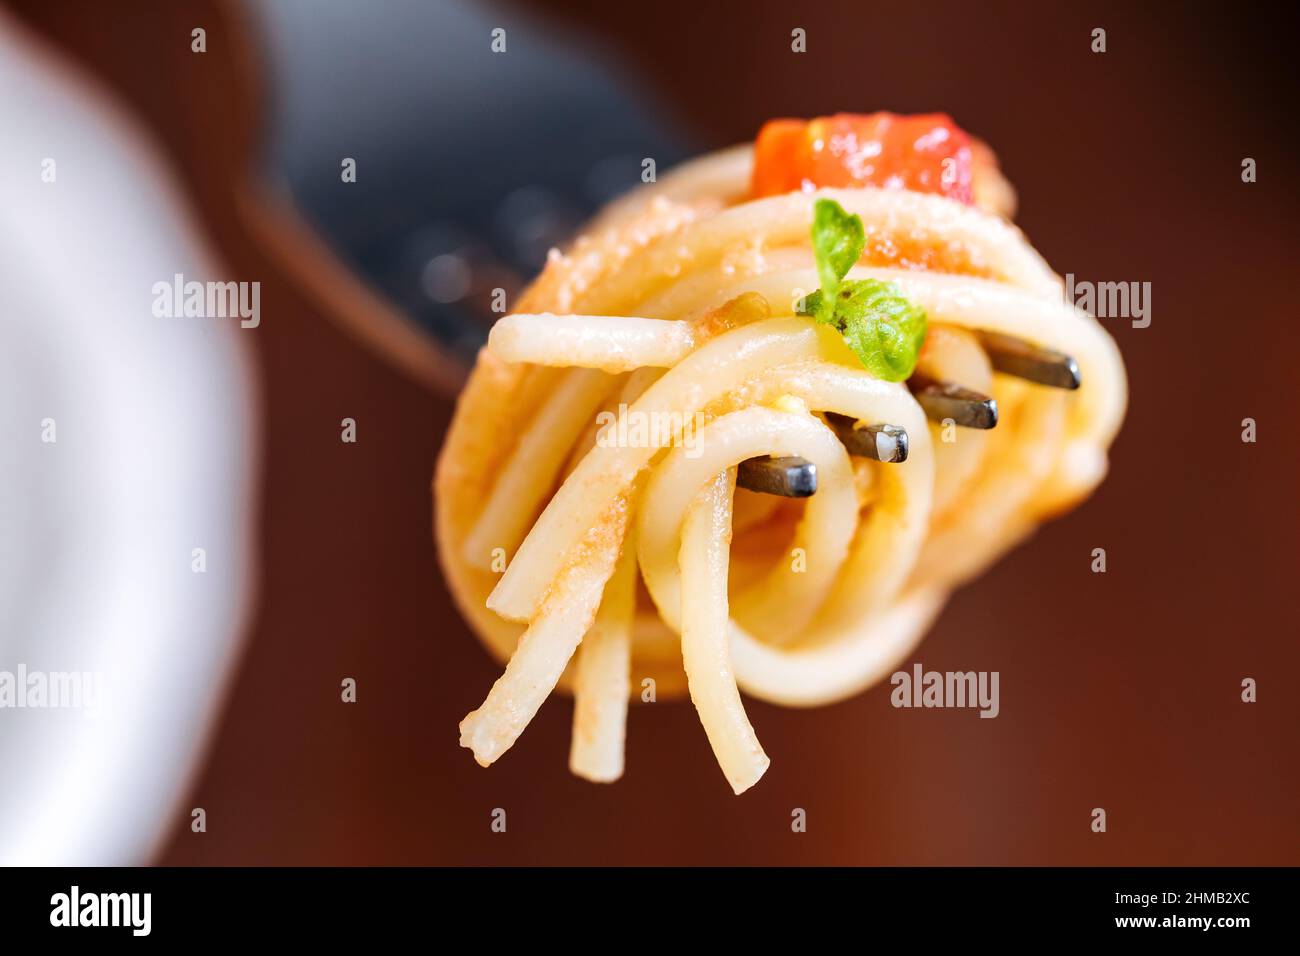 Pasta fresca con espagueti, tomate, champiñones, albahaca y queso parmesano en plato blanco sobre fondo de madera con ingredientes de fondo Foto de stock